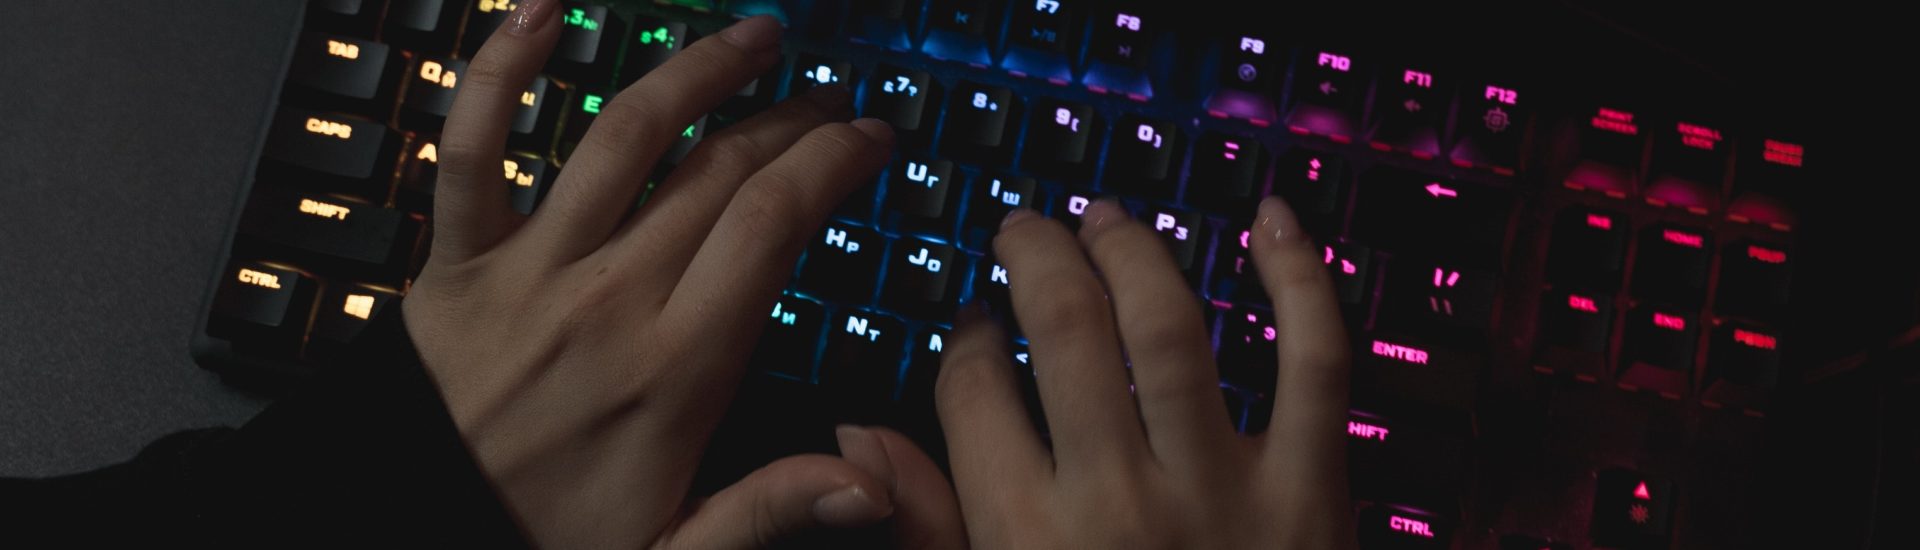 Hände, die auf bunt leuchtende Tastatur tippen